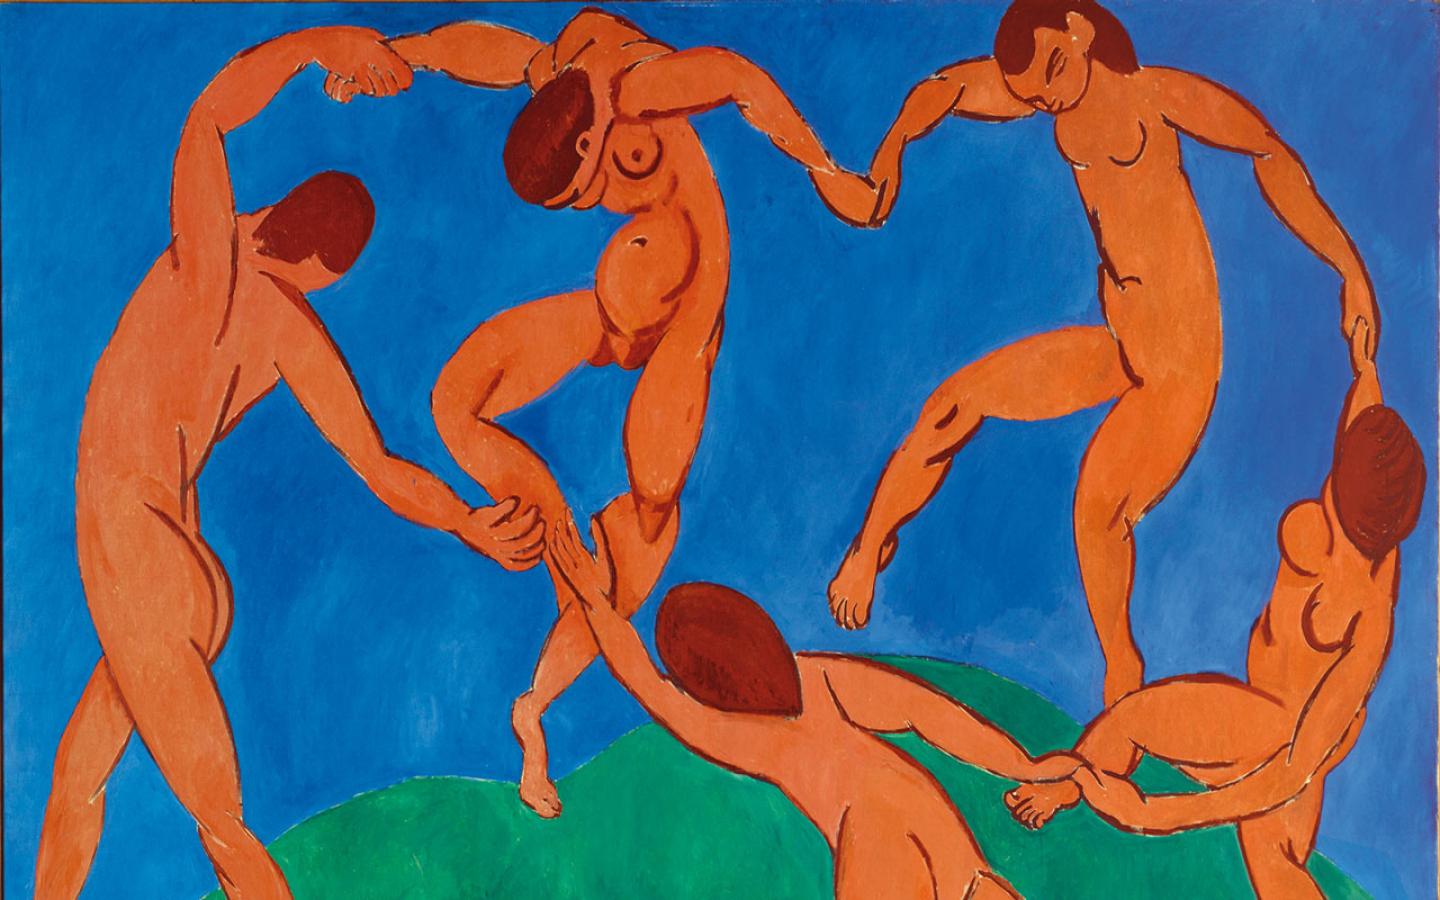 Henri Matisse - The Dance Wallpaper #2 1440 x 900 